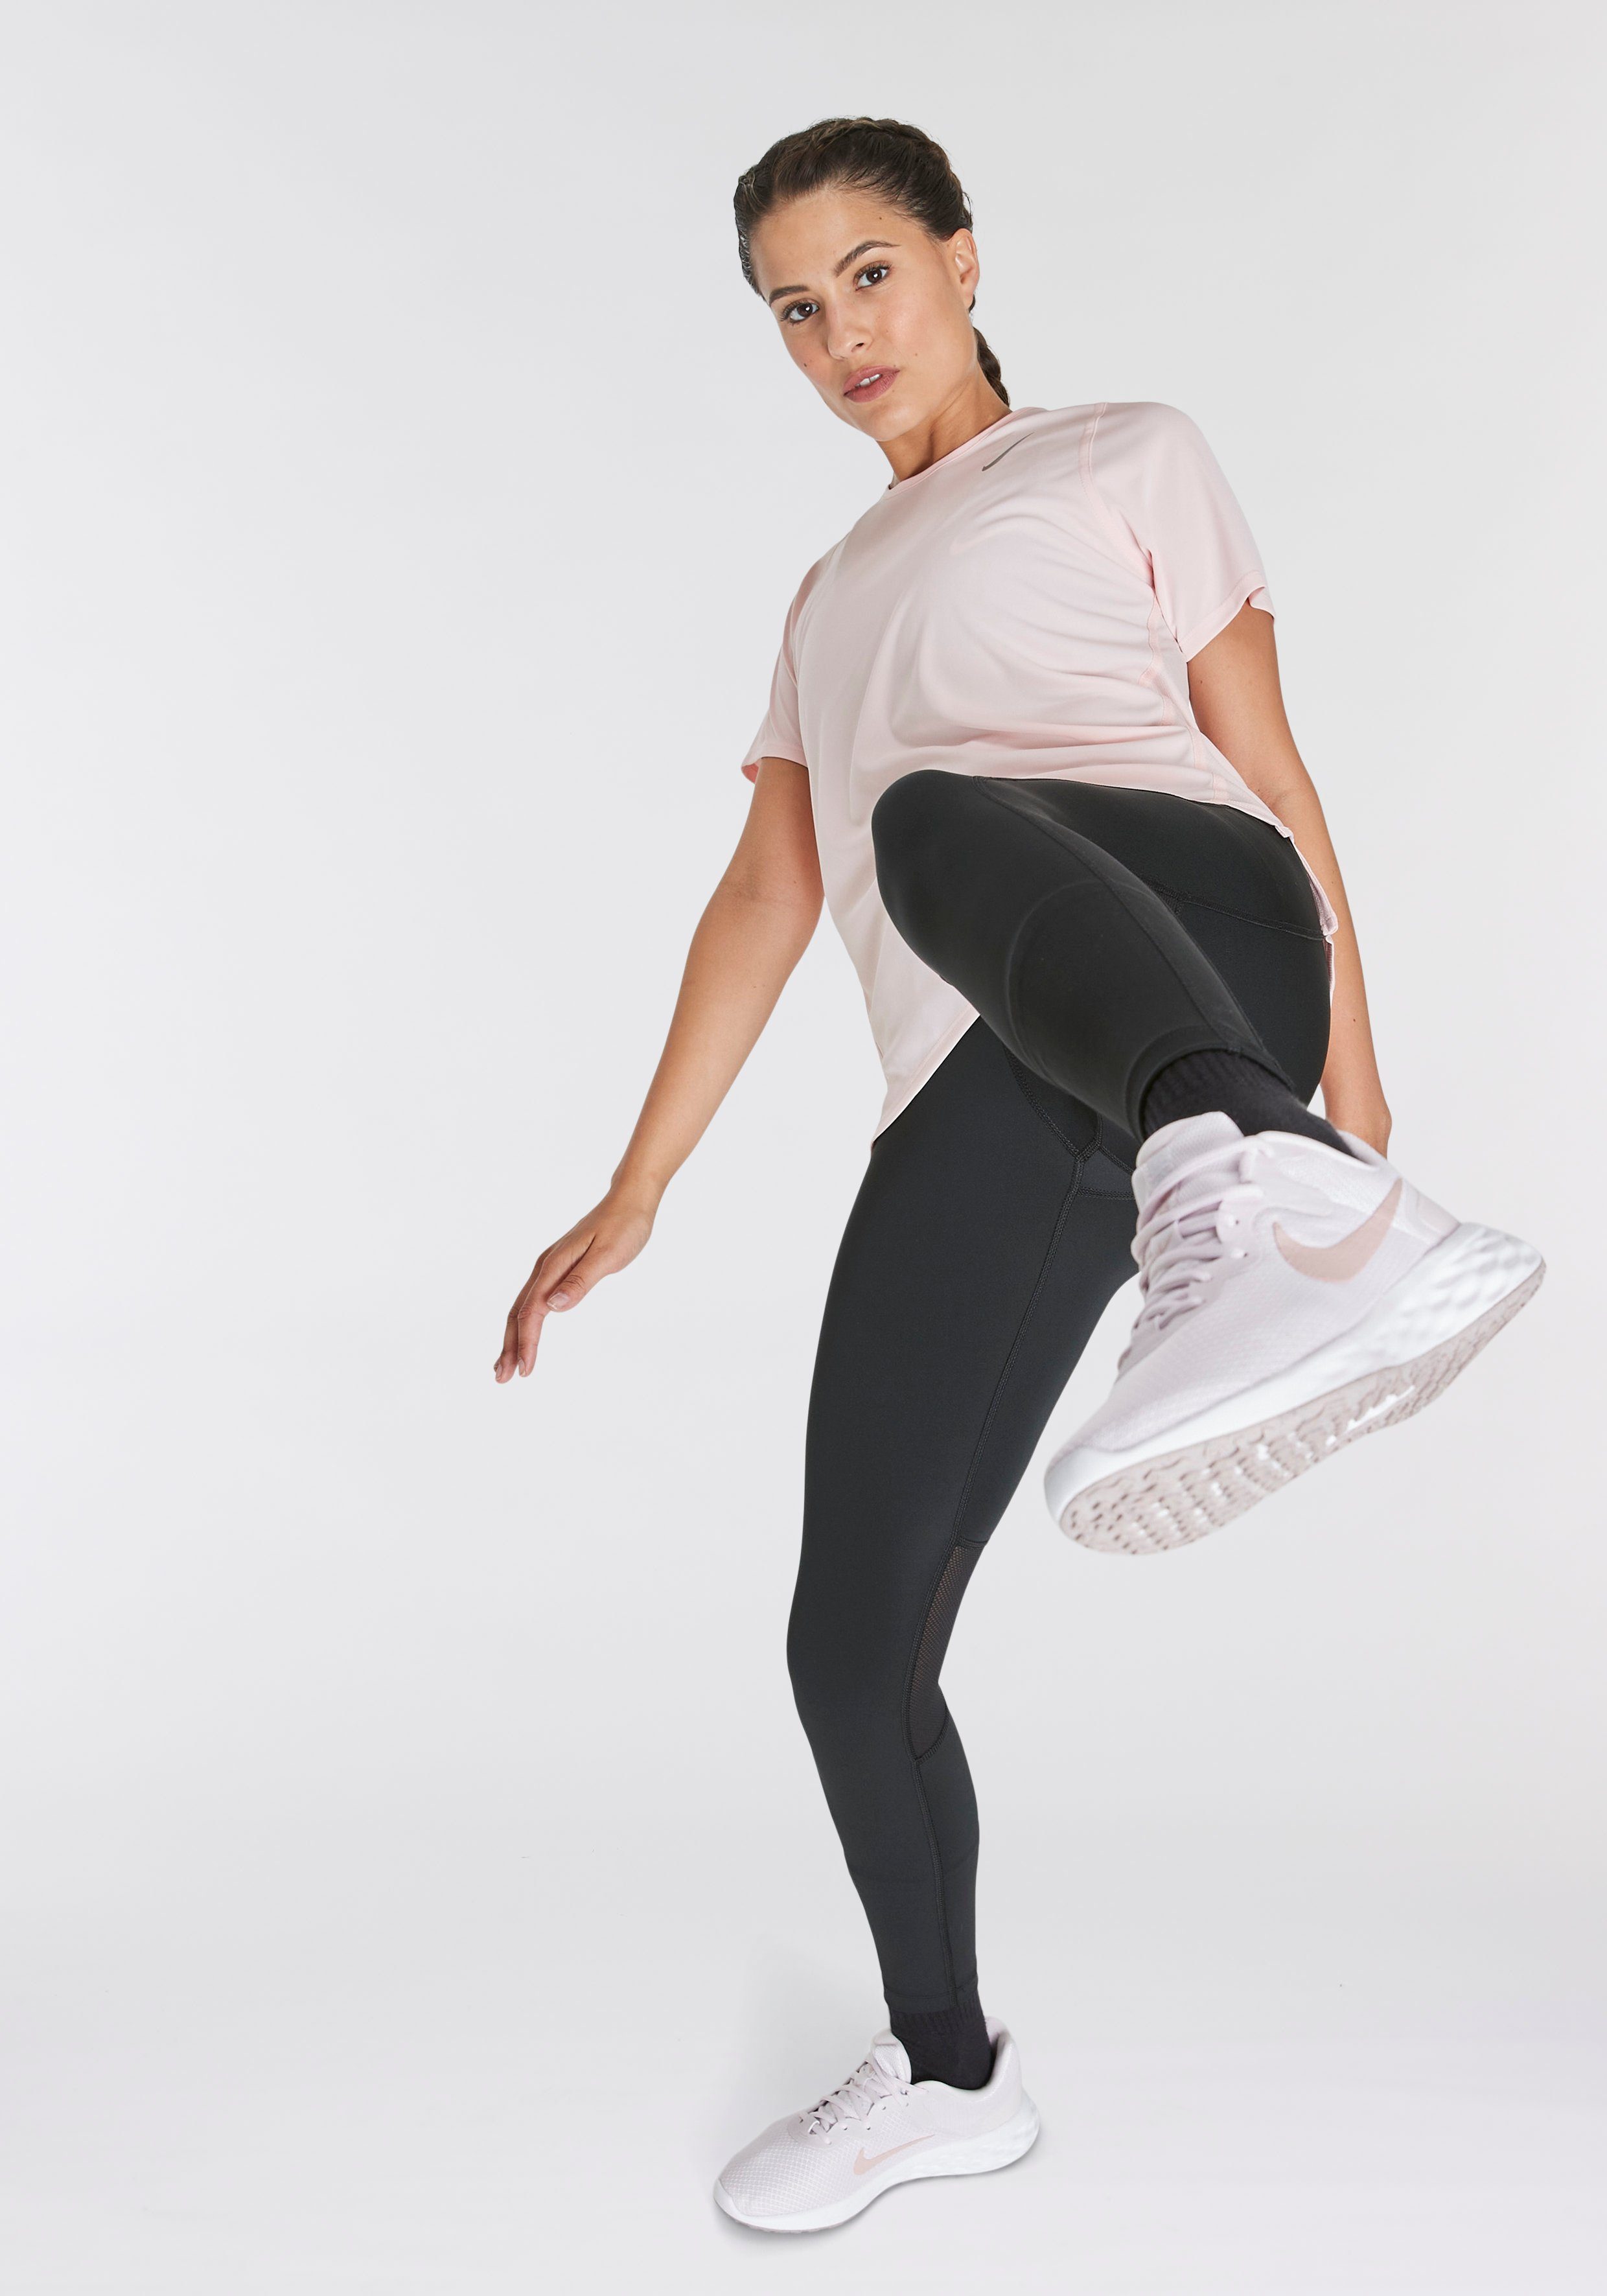 6 Laufschuh blassrosa NEXT NATURE Nike REVOLUTION